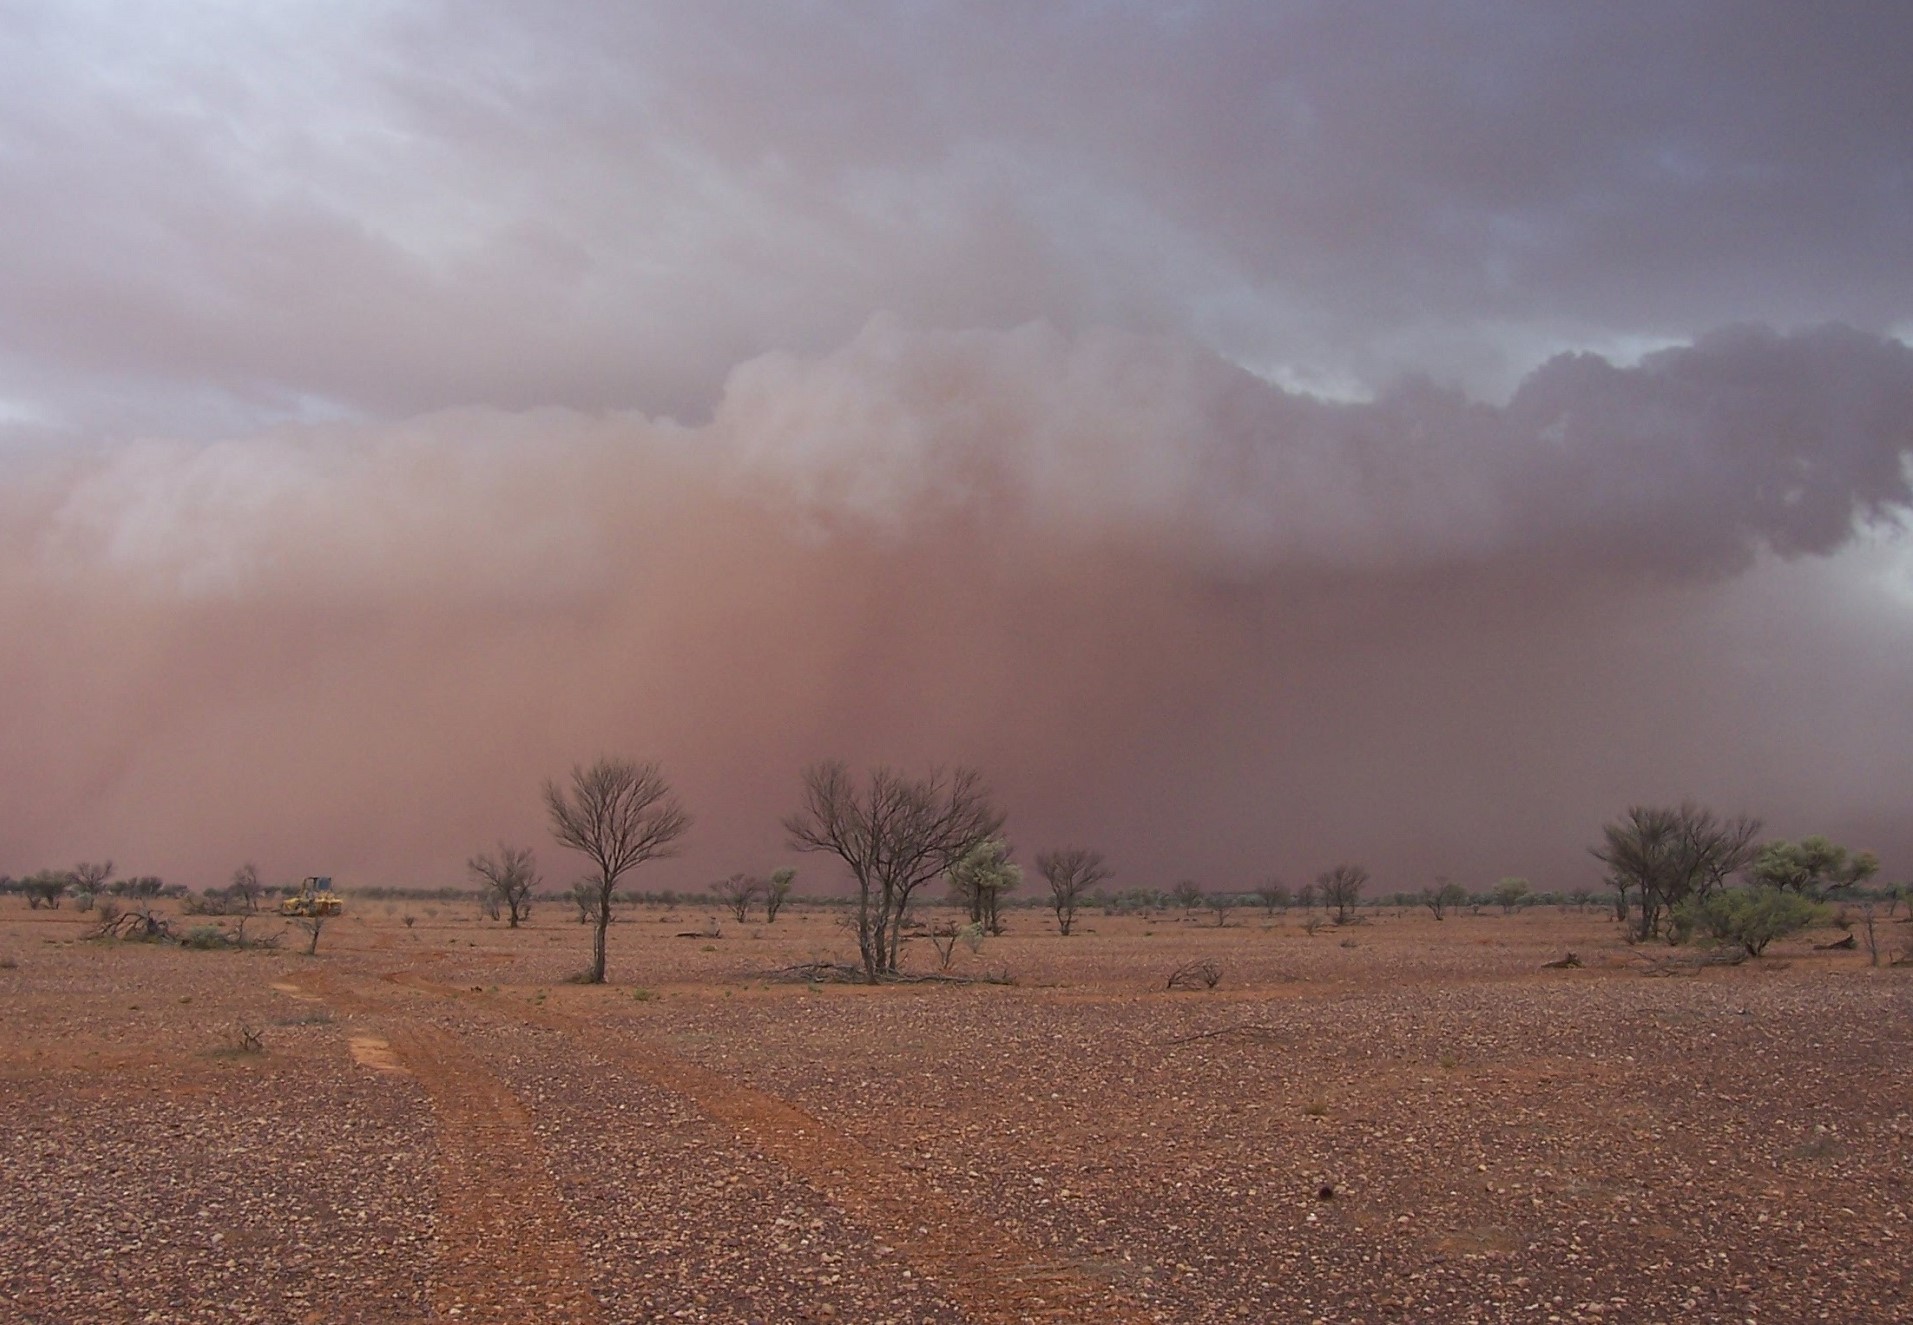 Dust Storm Clouds